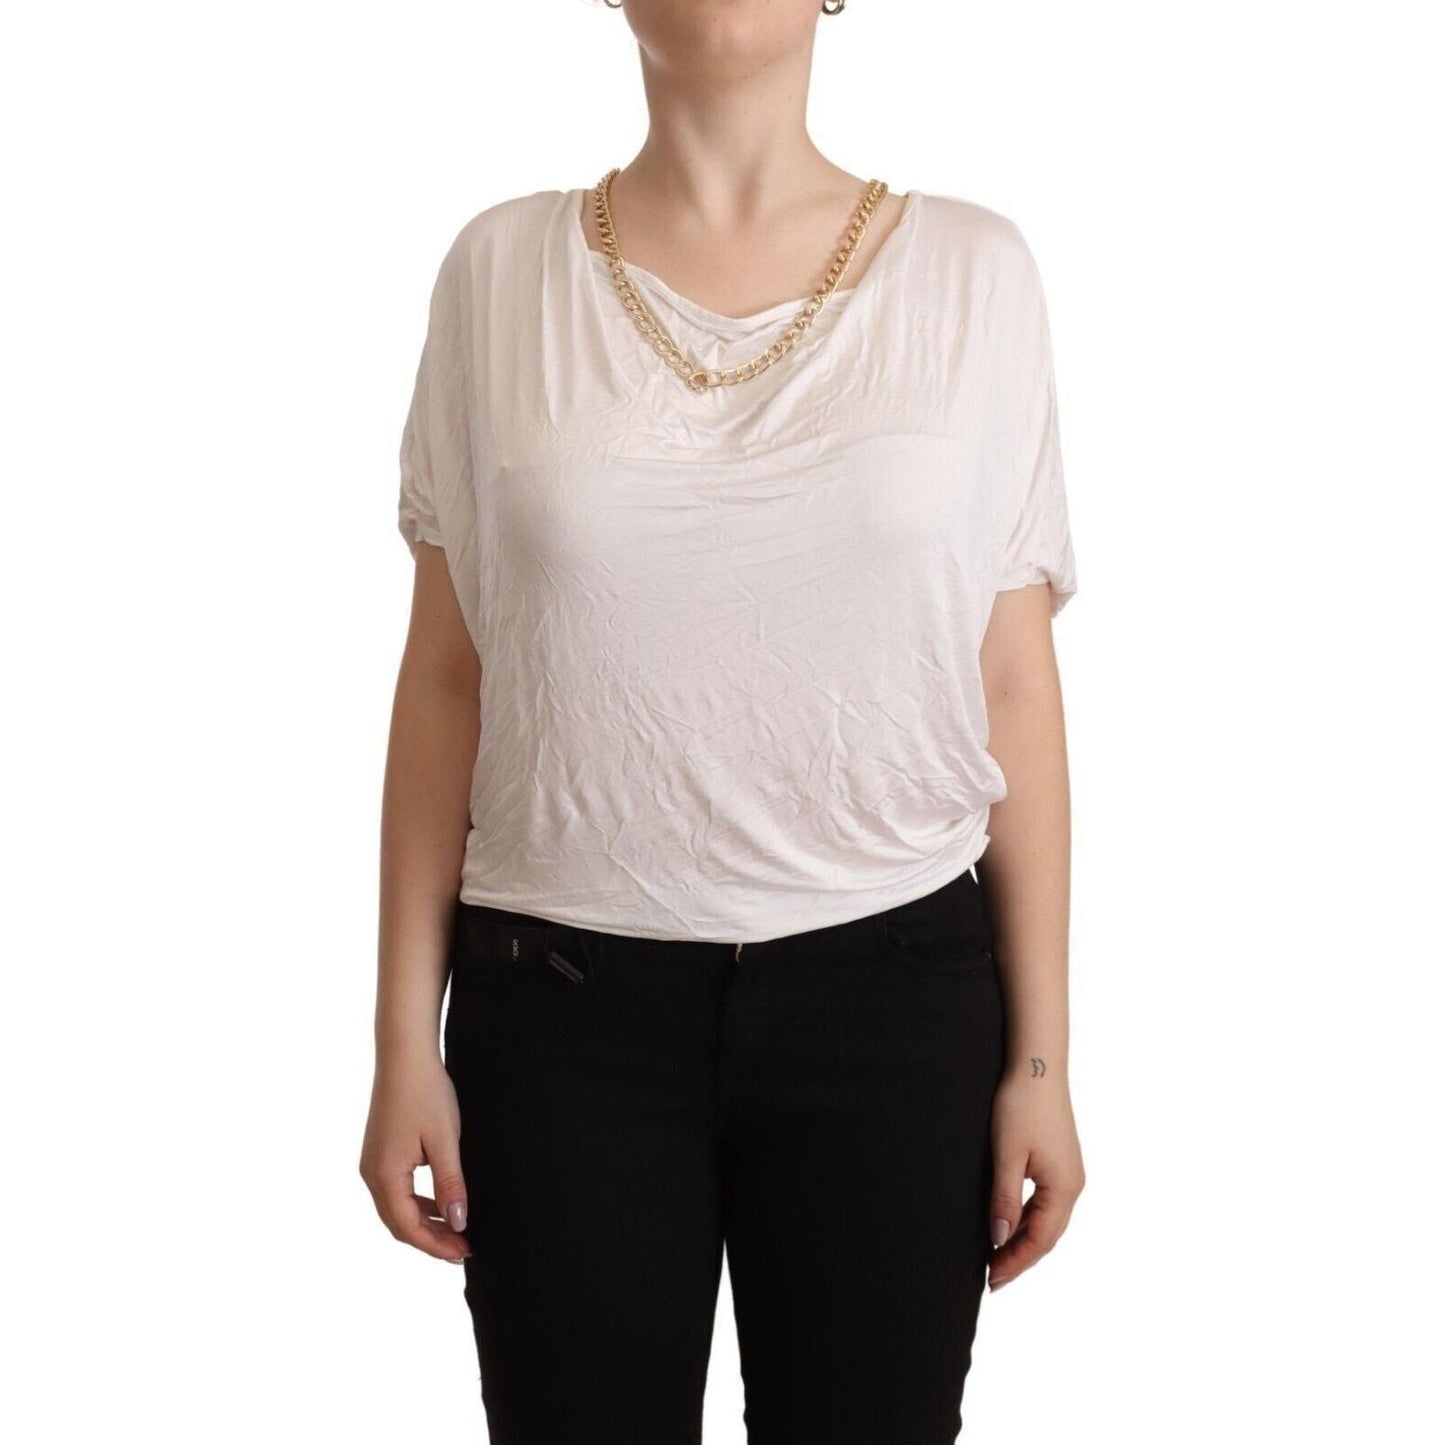 Guess By Marciano Elegant White Gold Chain T-Shirt Top white-short-sleeves-gold-chain-t-shirt-top s-l1600-69-ddf2e05e-36e.jpg